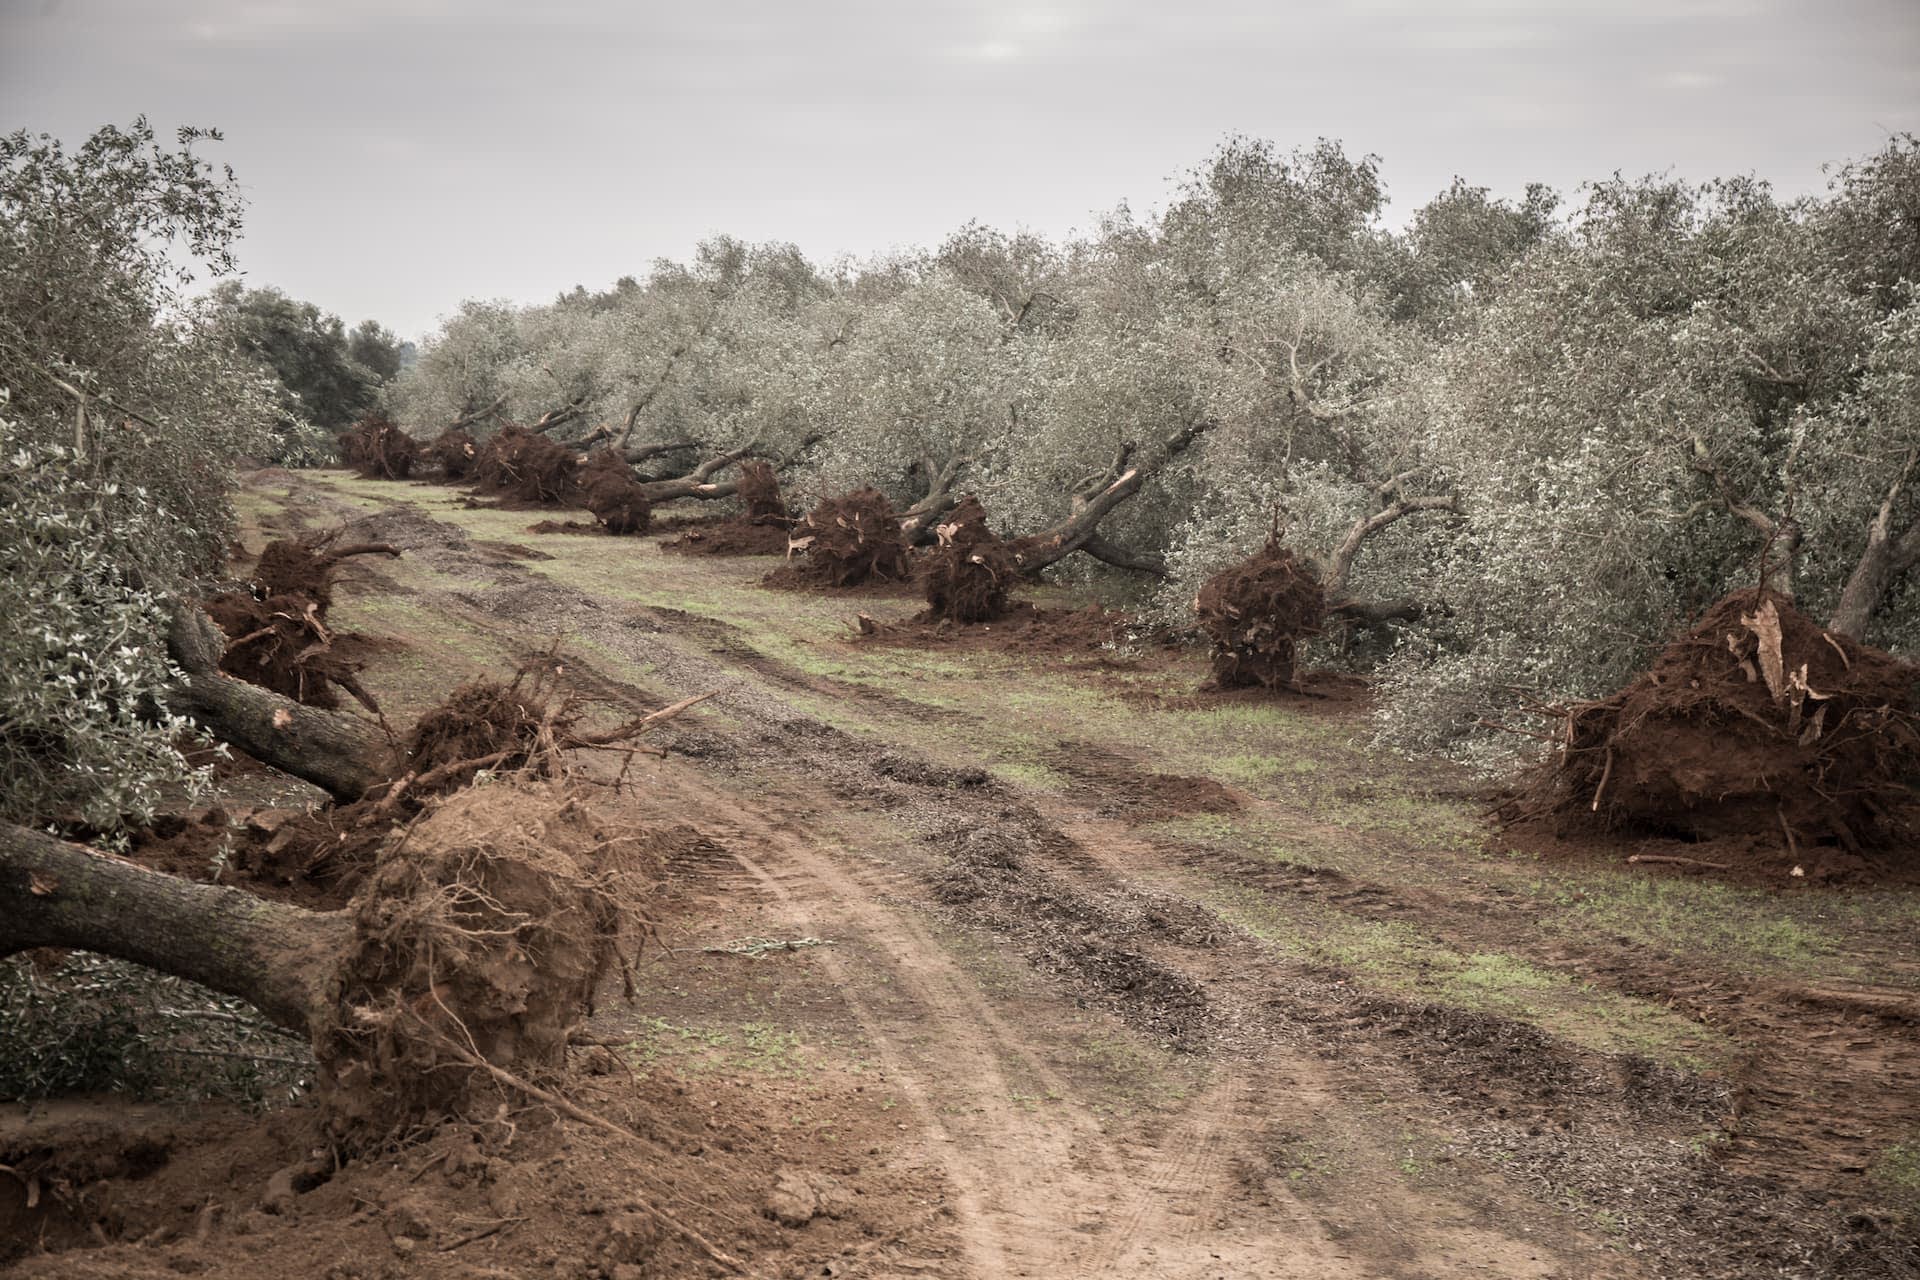 business-europe-reimagining-the-xylella-verwoest-landschap-van-zuid-puglia-olijfolie-tijden